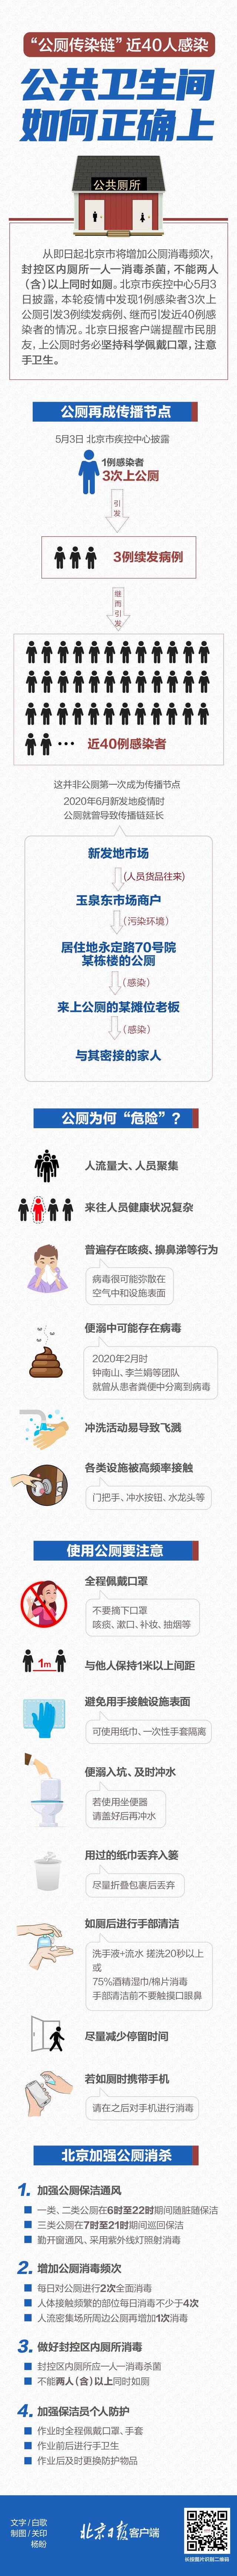 北京和浙江天台两地出现“公厕传播链”